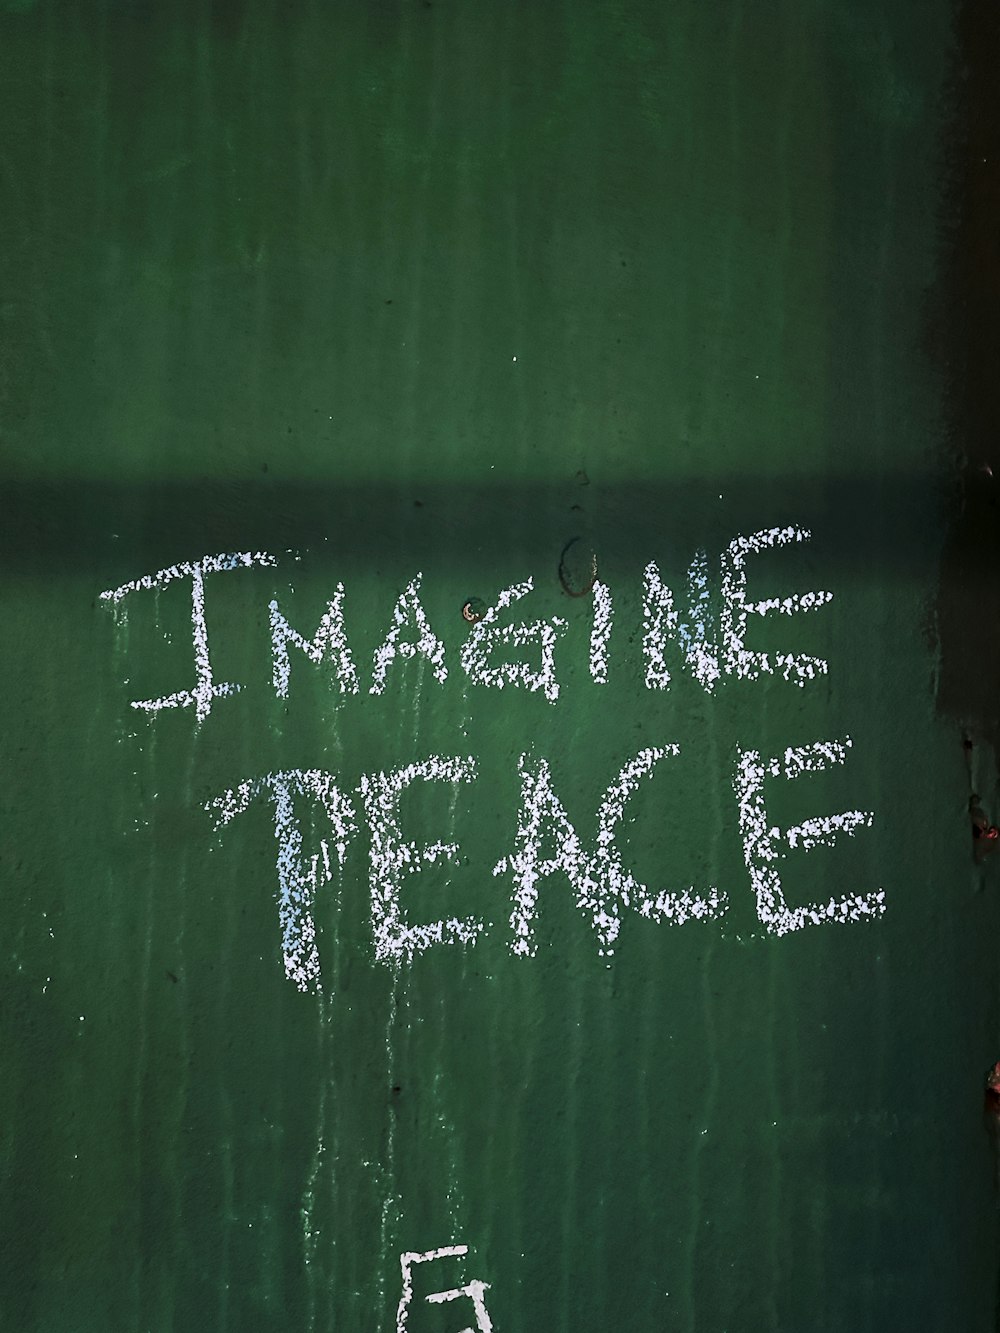 Eine Kreidezeichnung auf einer grünen Wand mit der Aufschrift "Stell dir den Frieden vor"